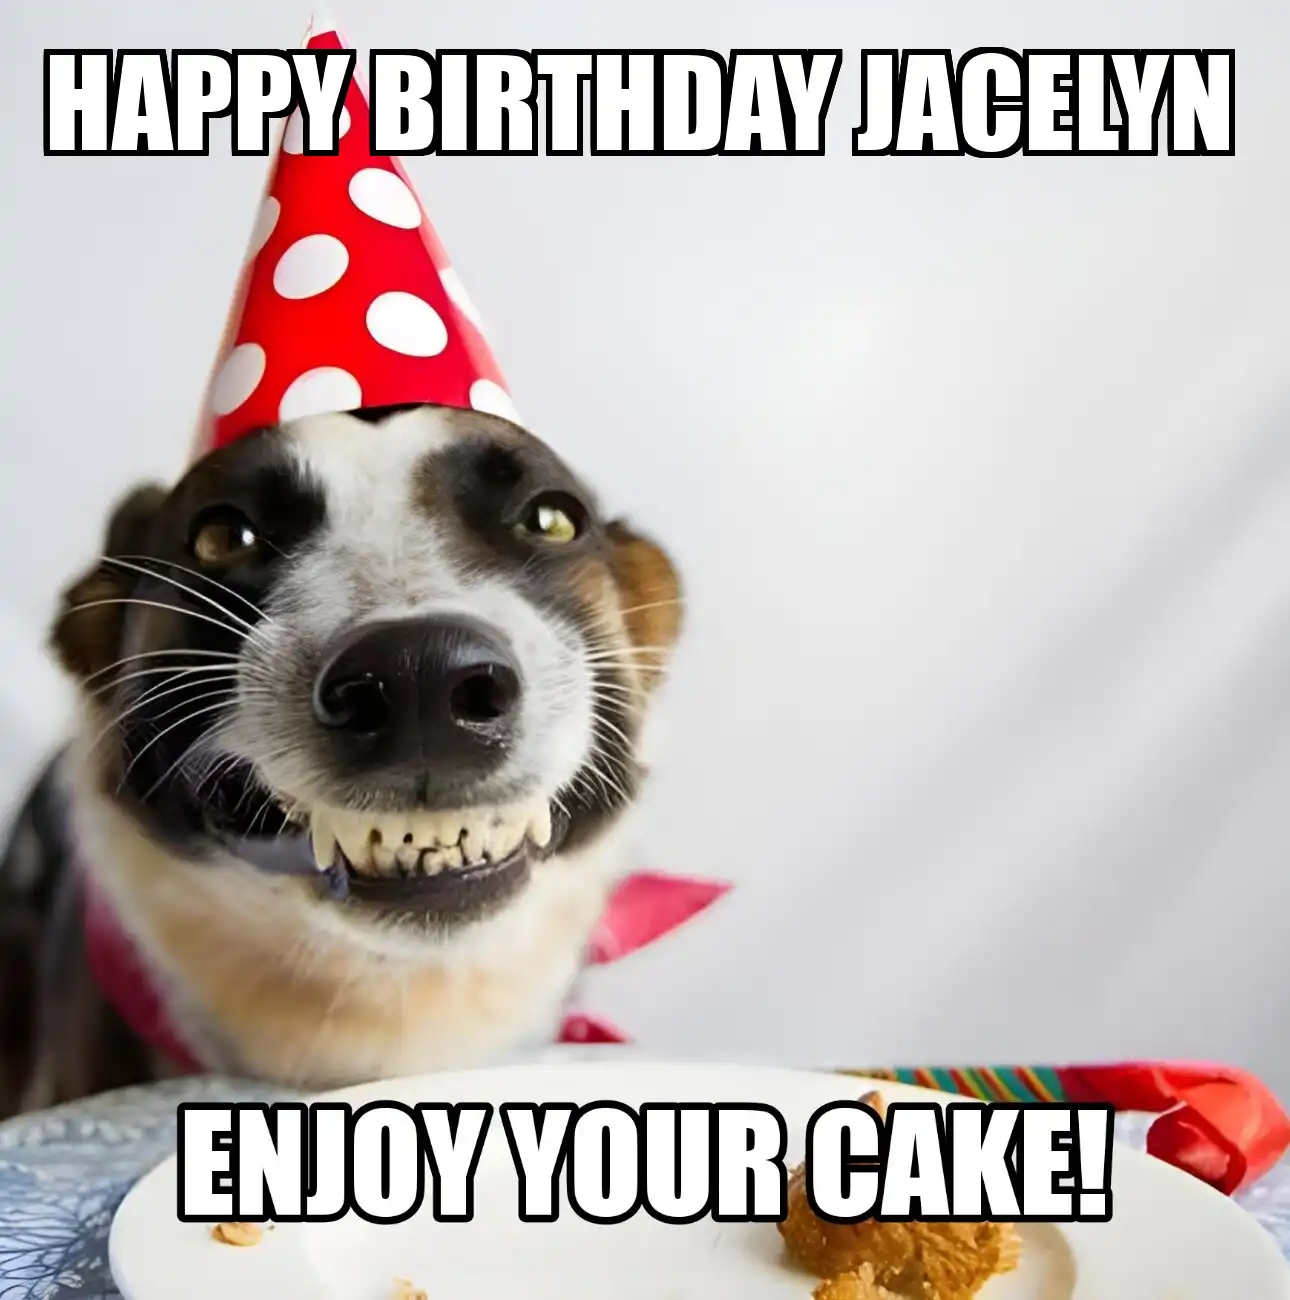 Happy Birthday Jacelyn Enjoy Your Cake Dog Meme